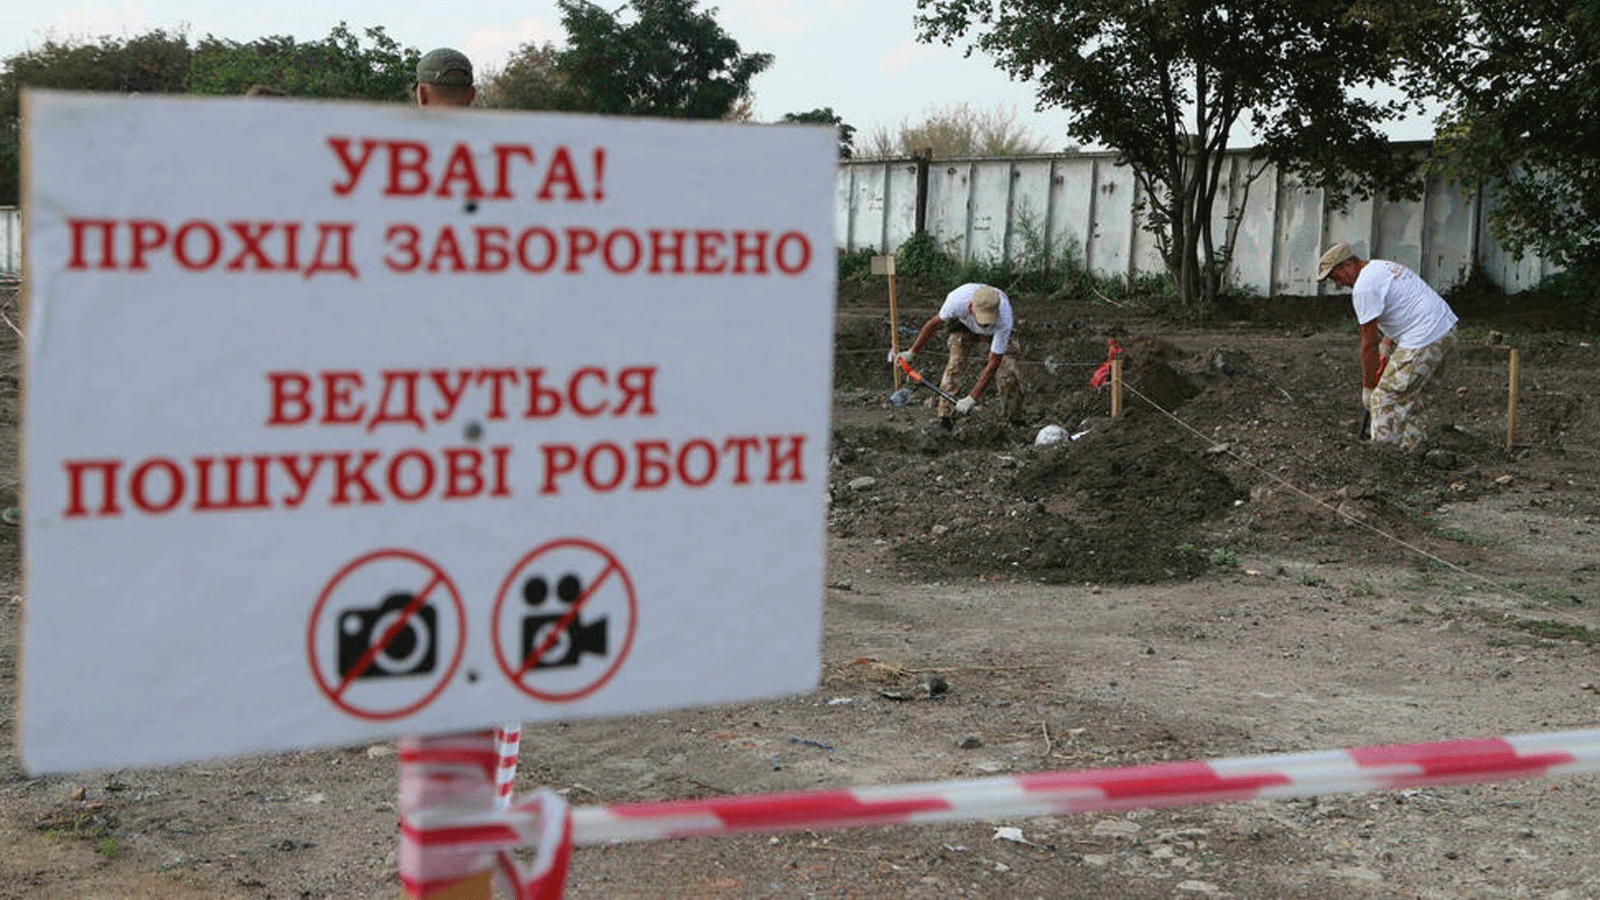 أشخاص يعملون في موقع المقبرة الجماعية التي تم اكتشافها بالقرب من مطار أوديسا في أوكرانيا